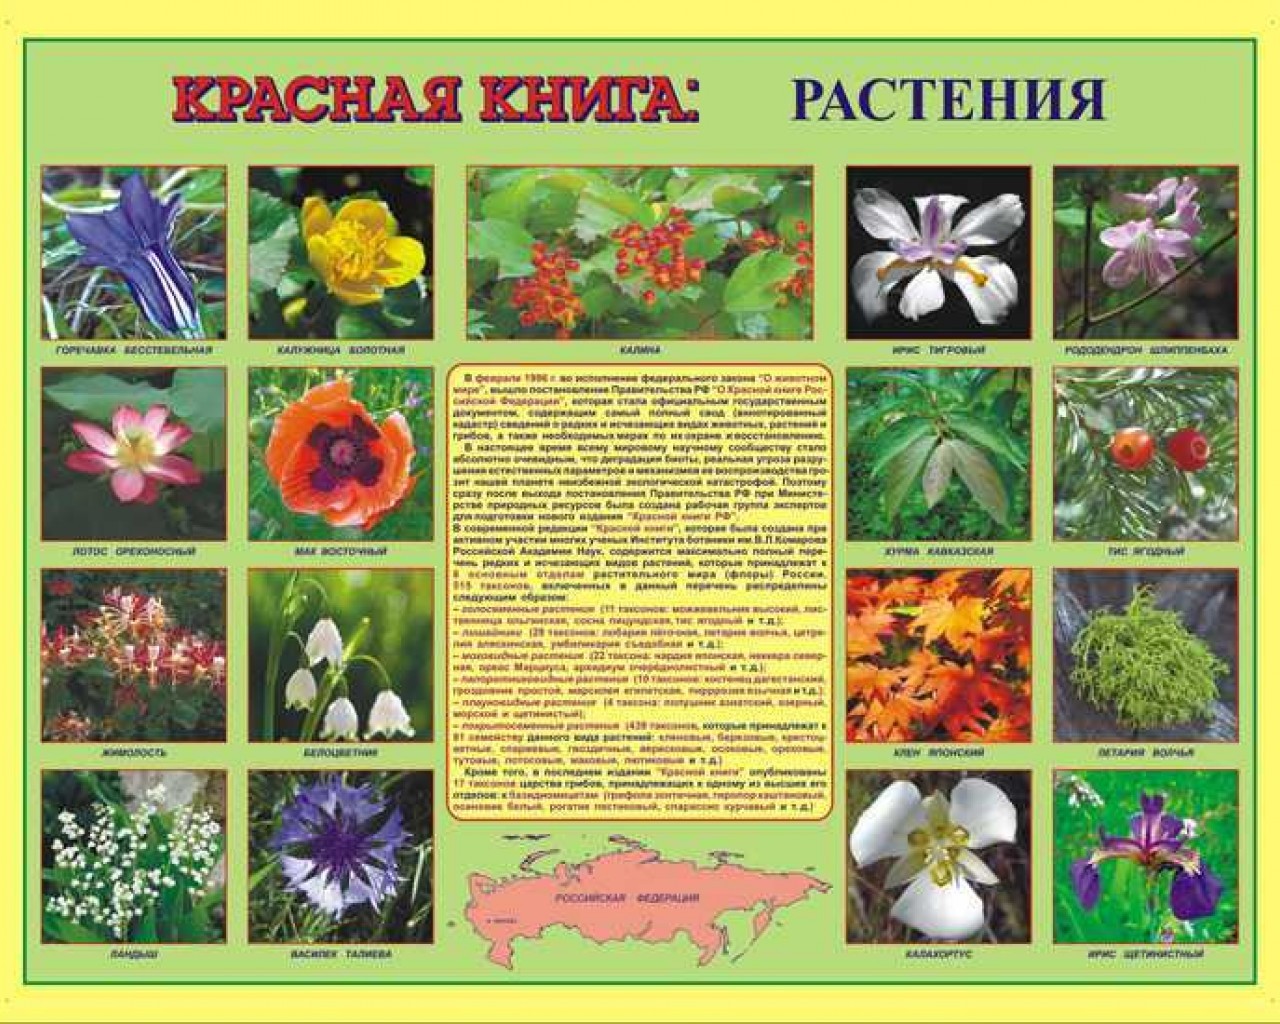 Редкие и уникальные растения, внесенные в красную книгу, их сохранение и значение для биоразнообразия